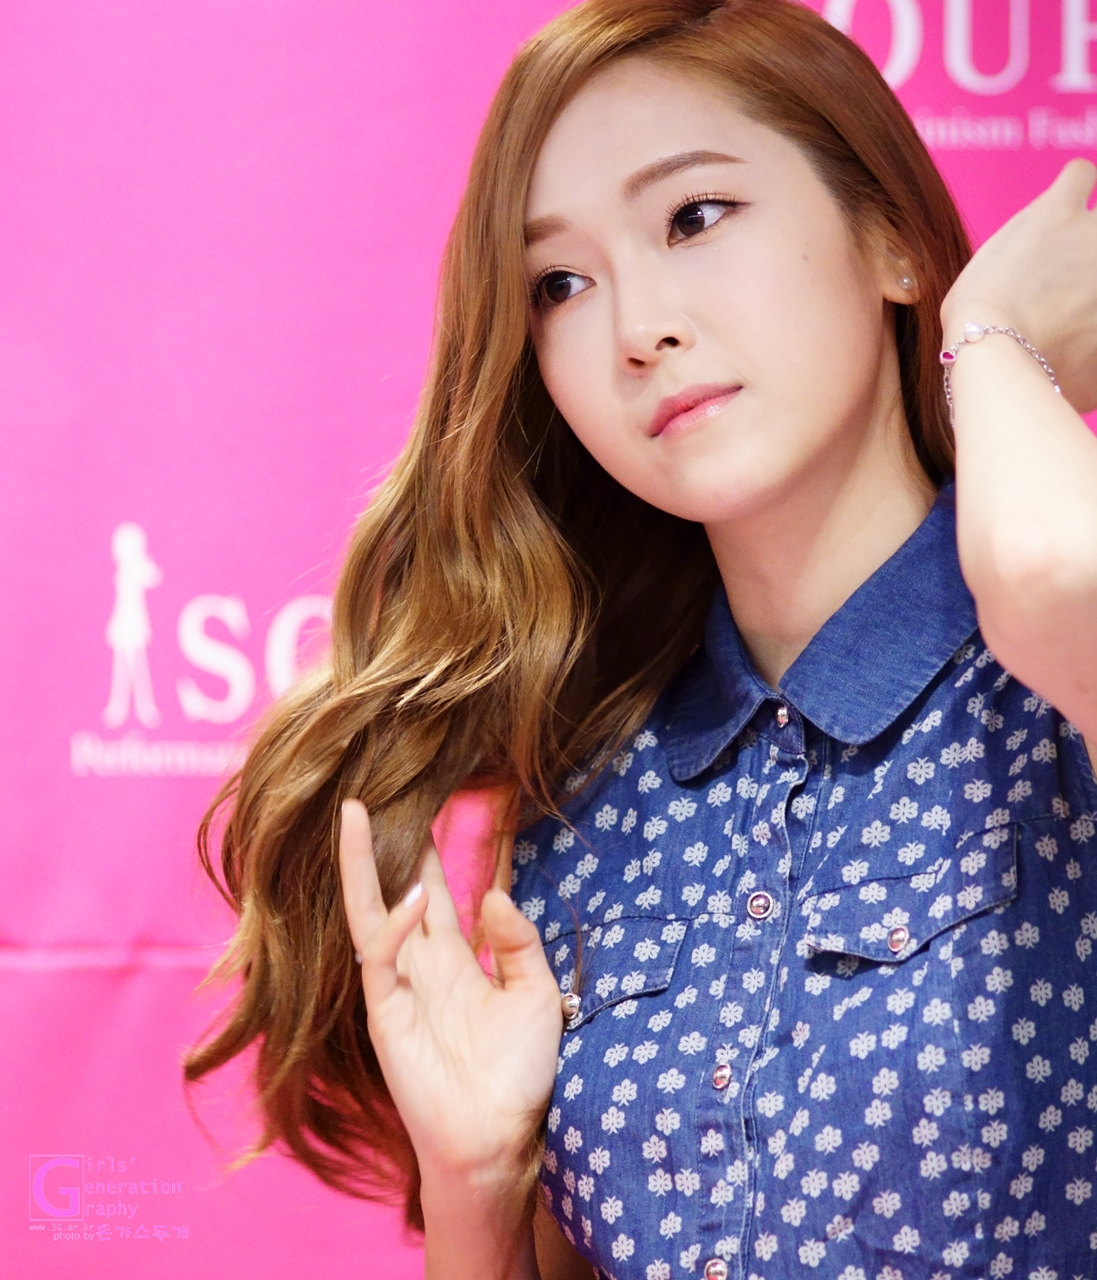 [PIC][04-04-2014]Jessica tham dự buổi fansign cho thương hiệu "SOUP" vào trưa nay - Page 3 225C593A539DC1A9270066